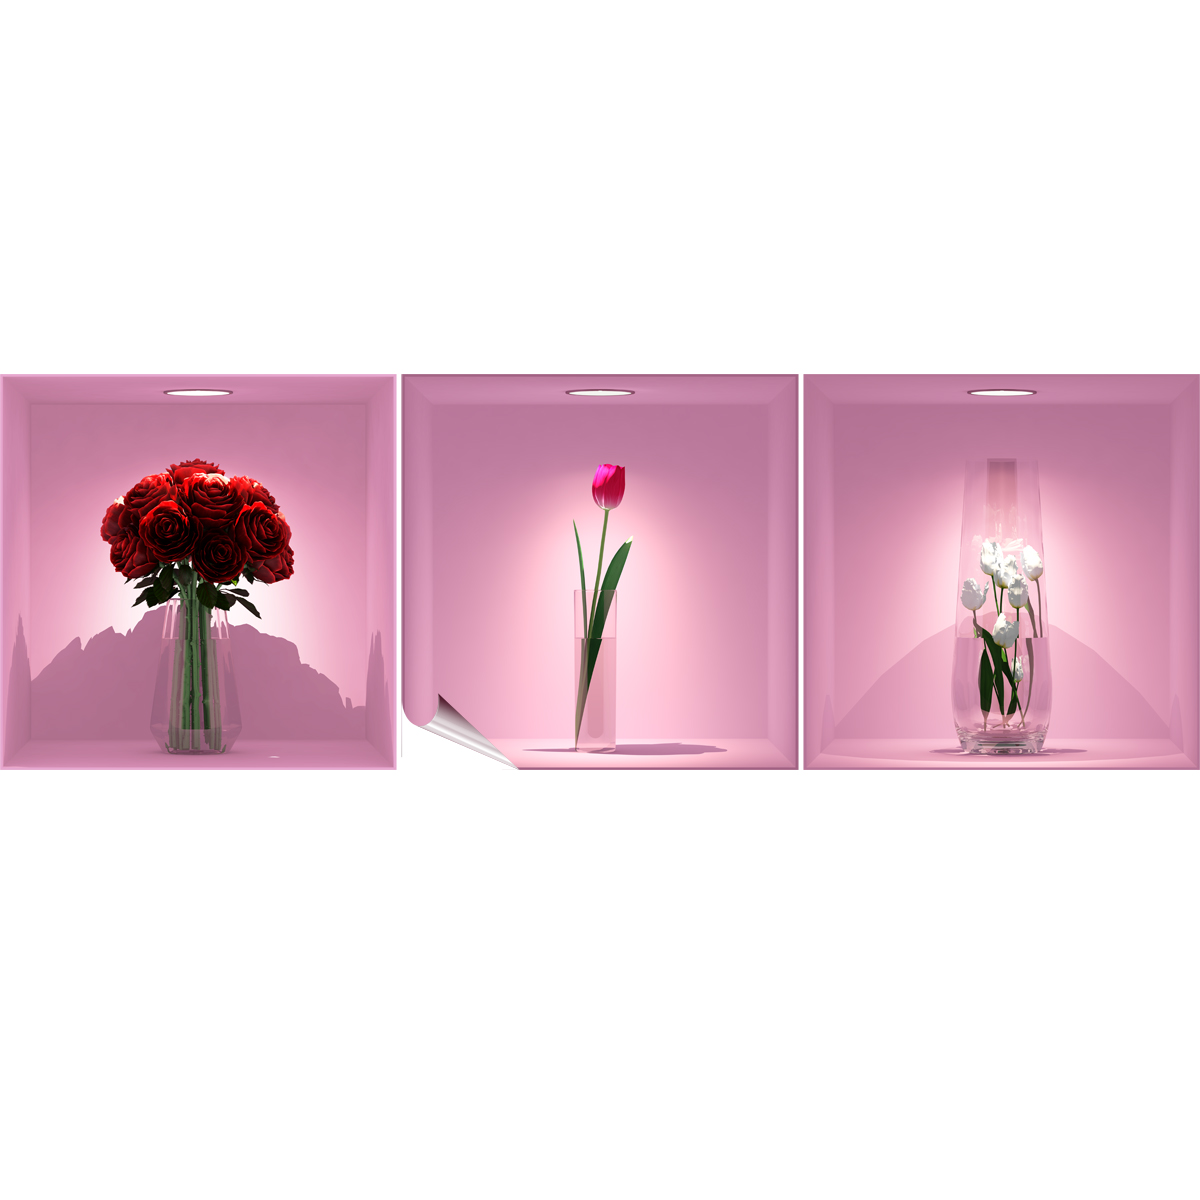 Vinilo efecto 3D Ramo de Rosas Rojas